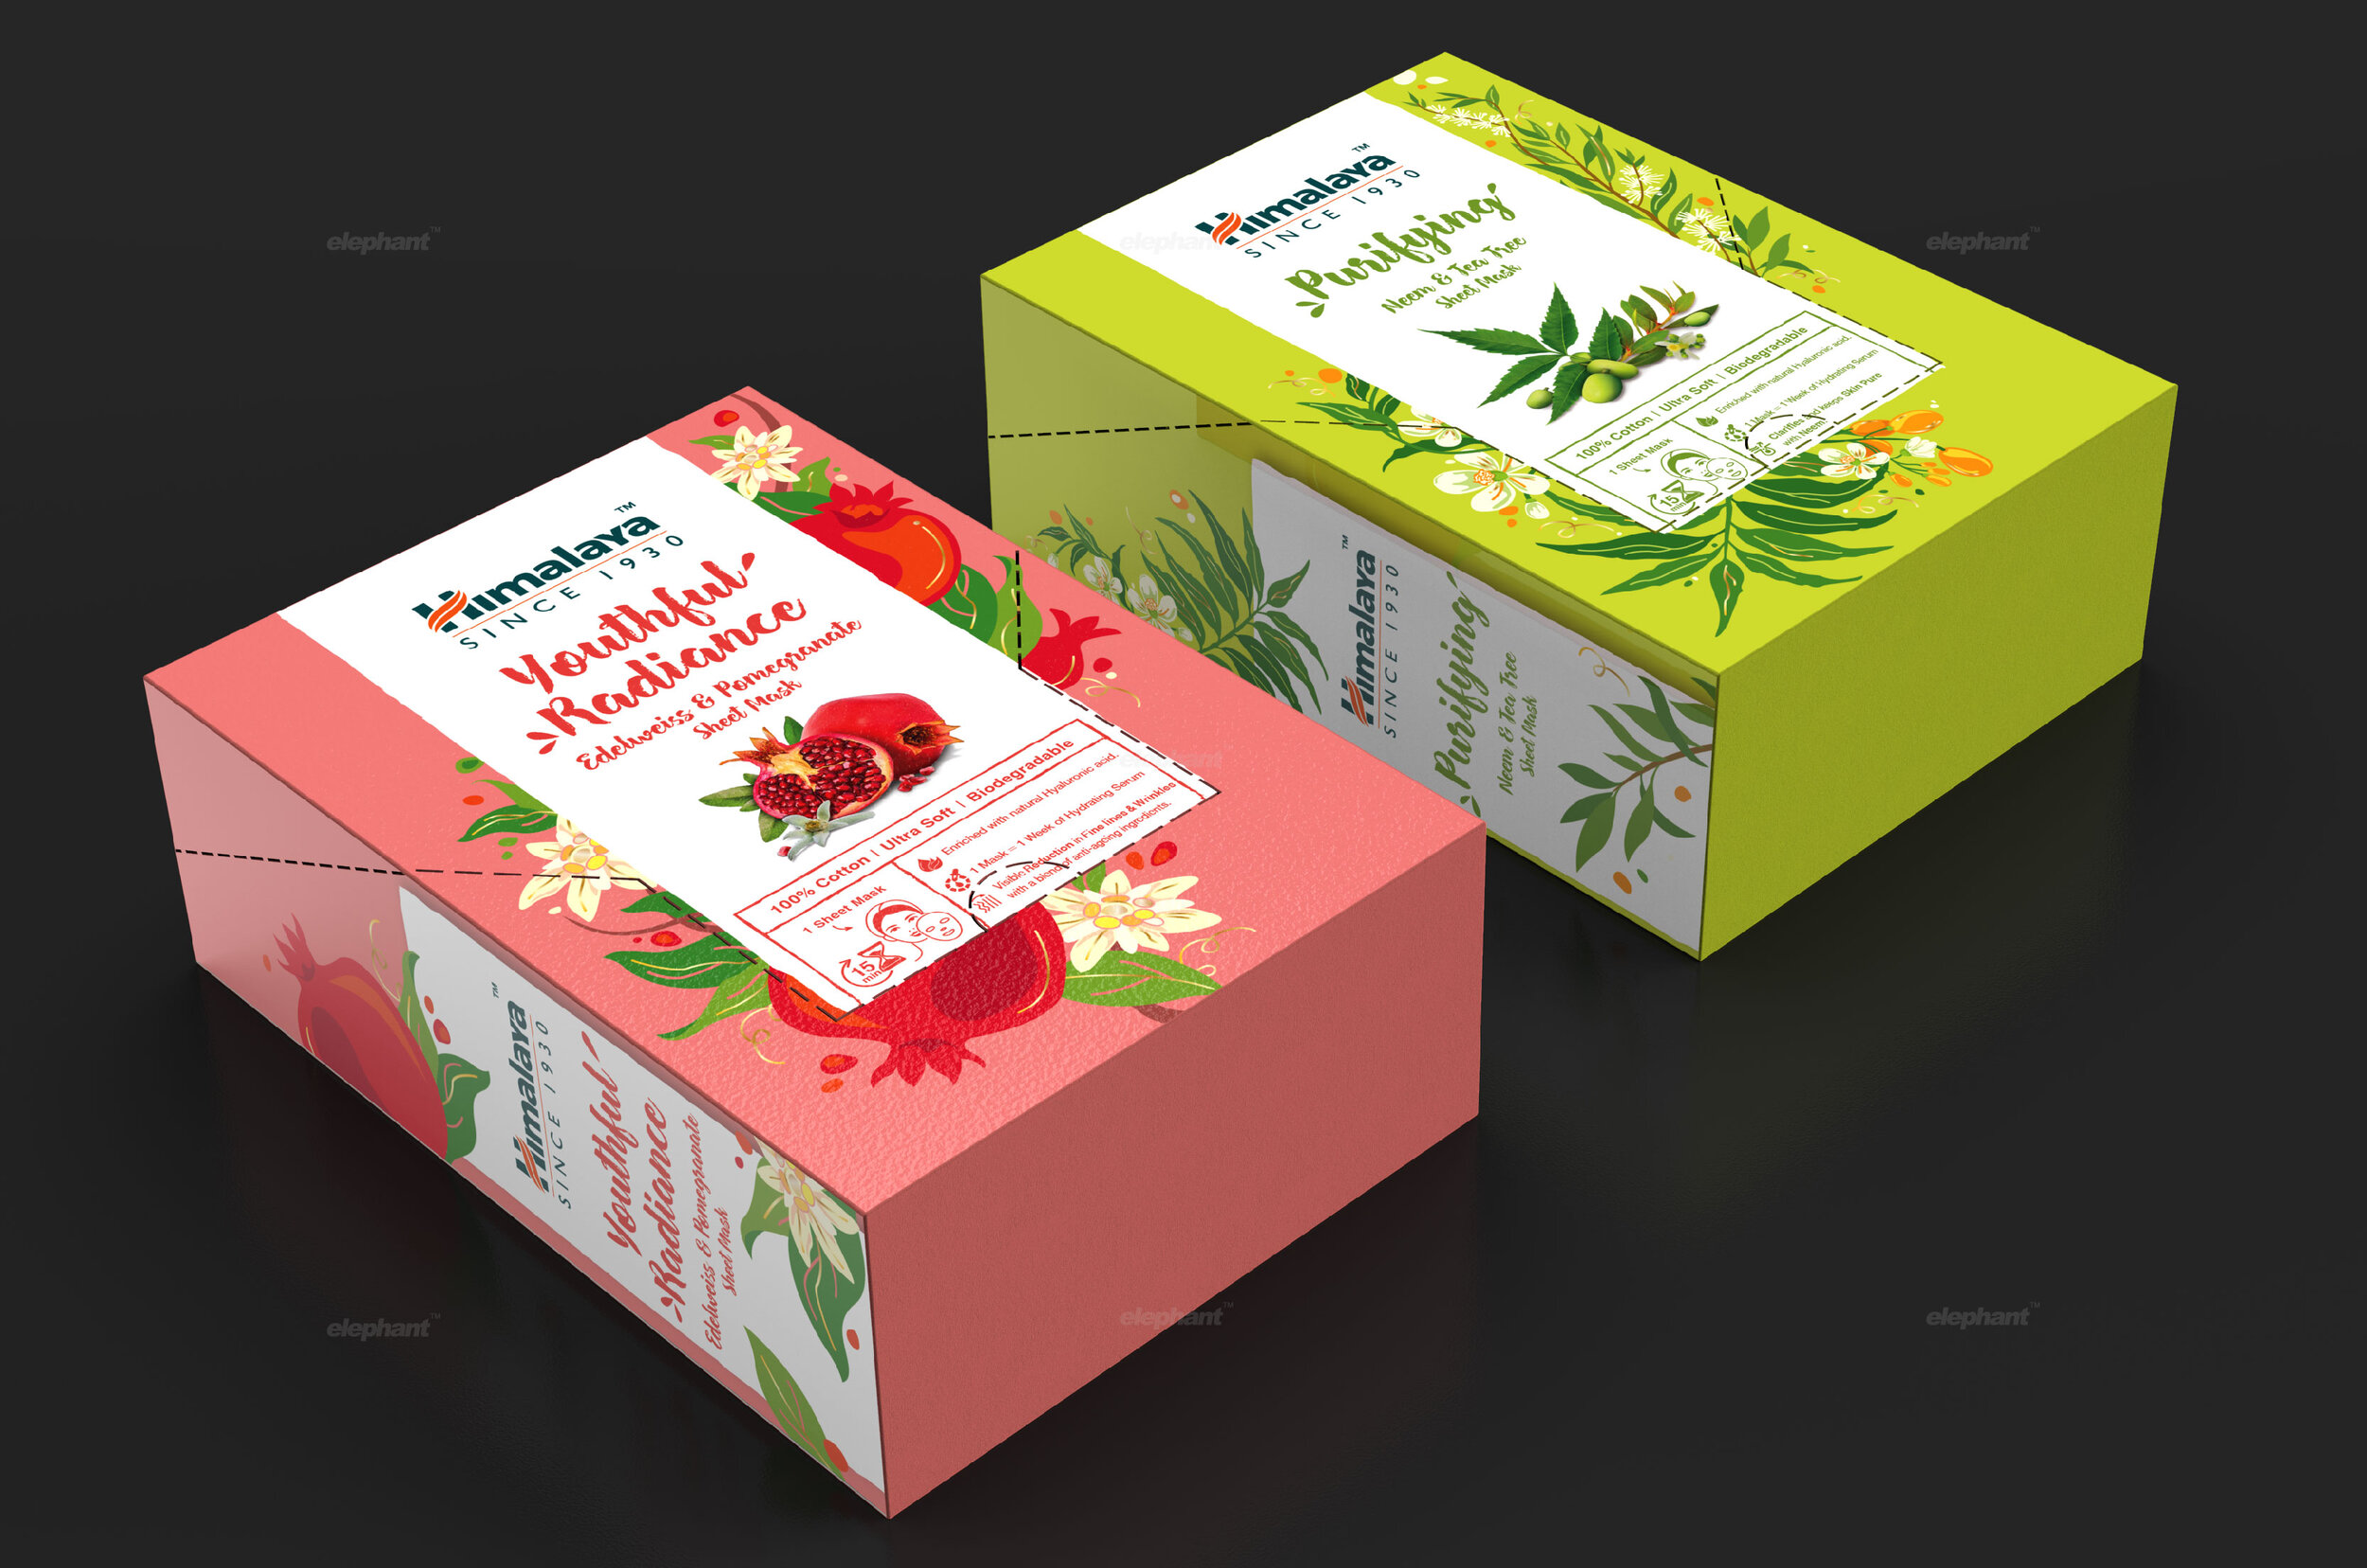 HimalayaSheetMask_packagingdesign_communictiondesign_elephantdesign_india_singapore_9.jpg